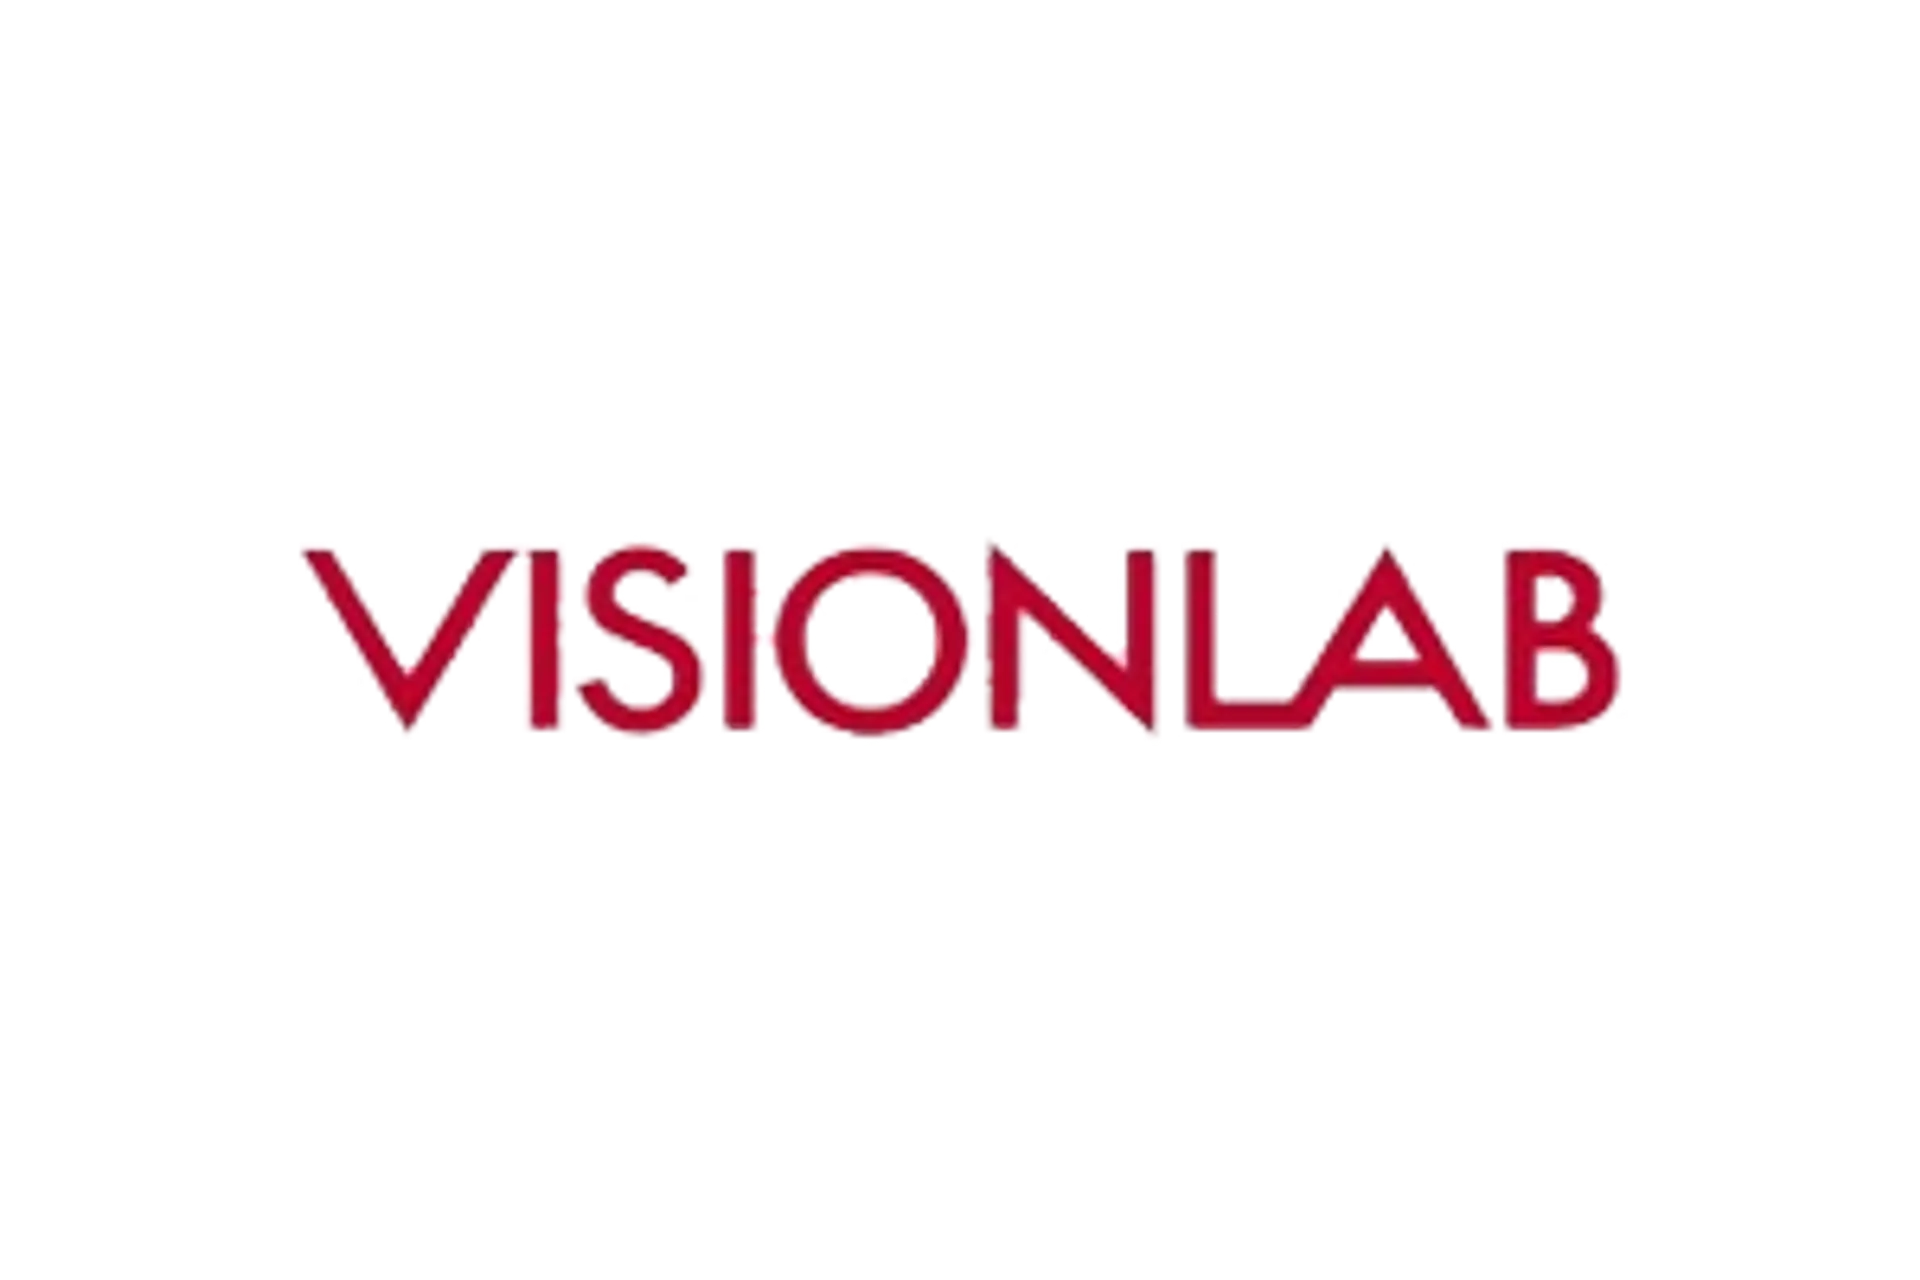 VISIONLAB logo